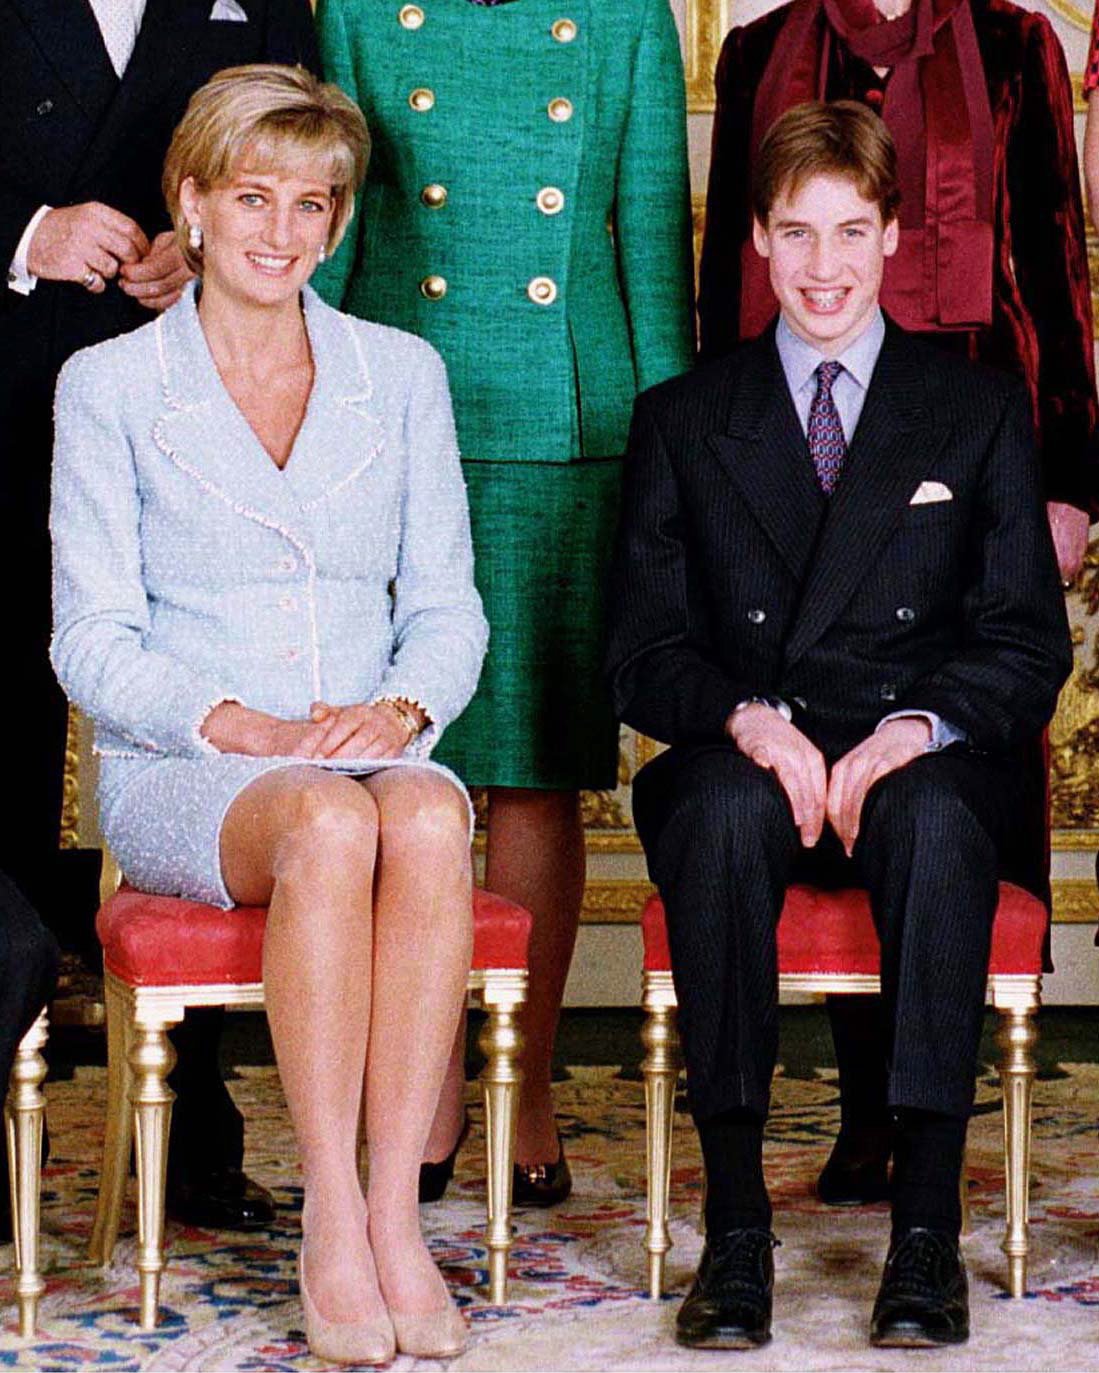 Le Prince William lors de la confirmation avec le Prince Charles et la Princesse Diana au Château de Windsor, Windsor, Royaume-Uni. | Source : Getty Images Getty Images